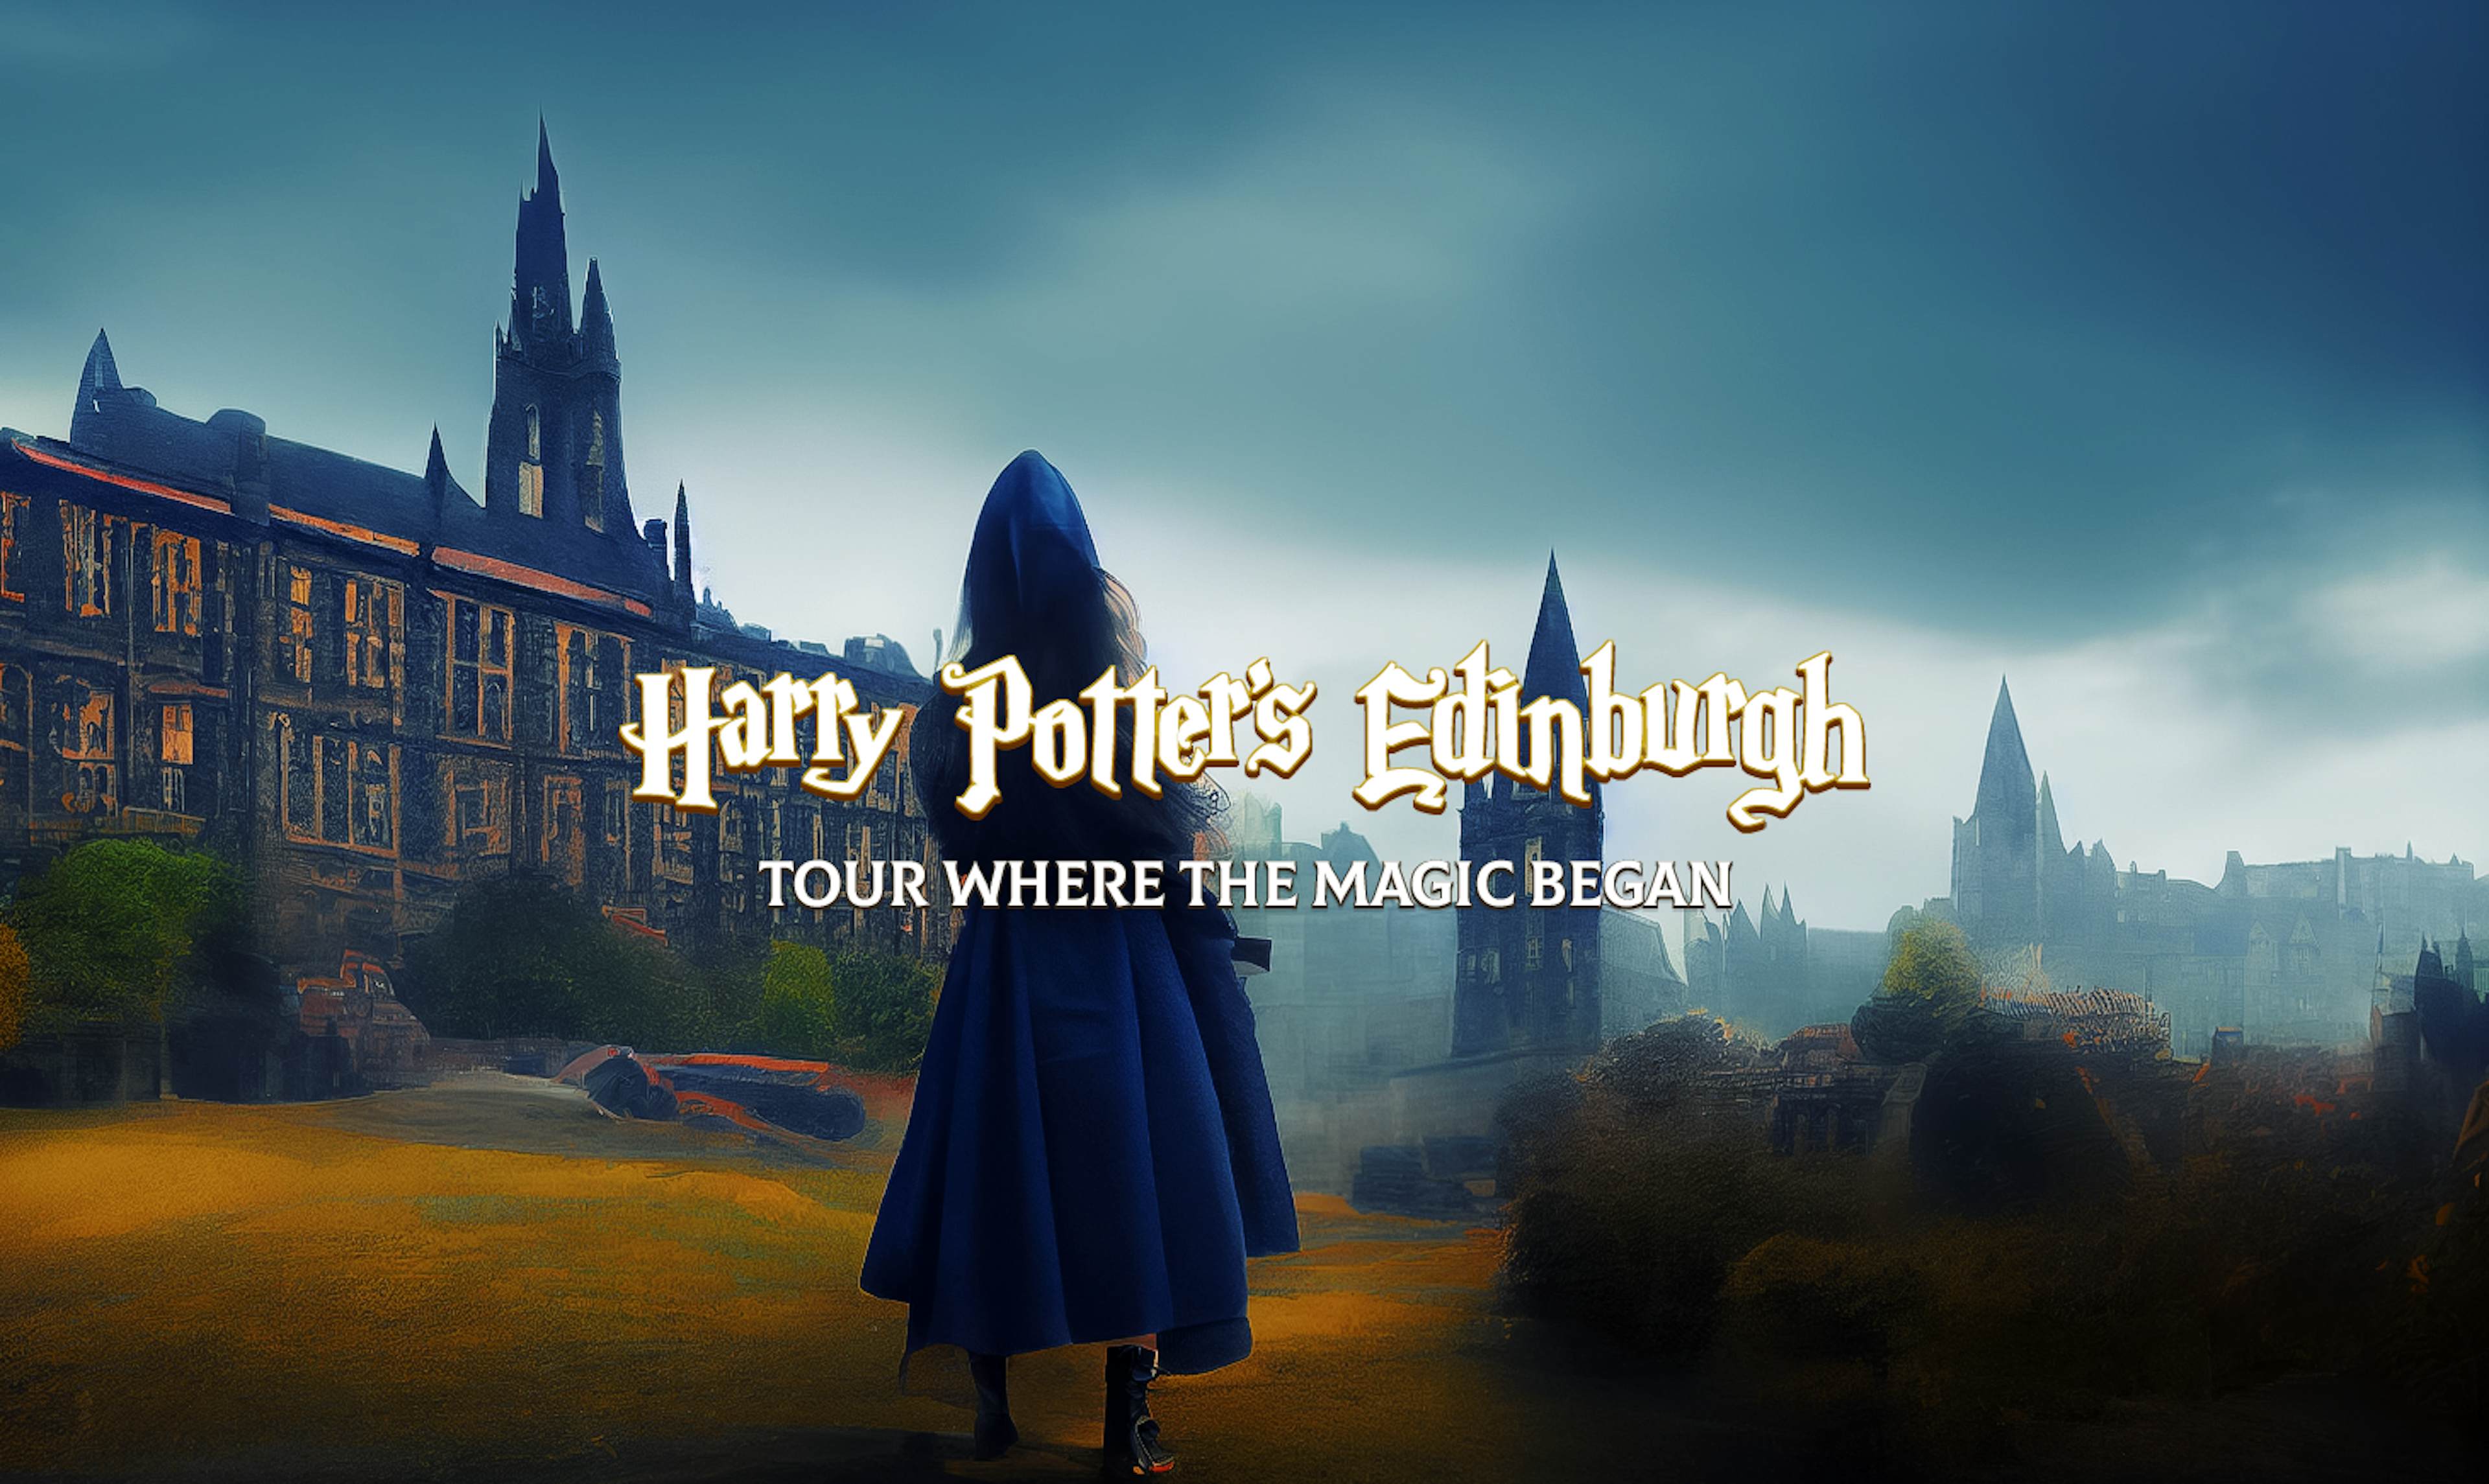 Edinburgh City of Wizards image